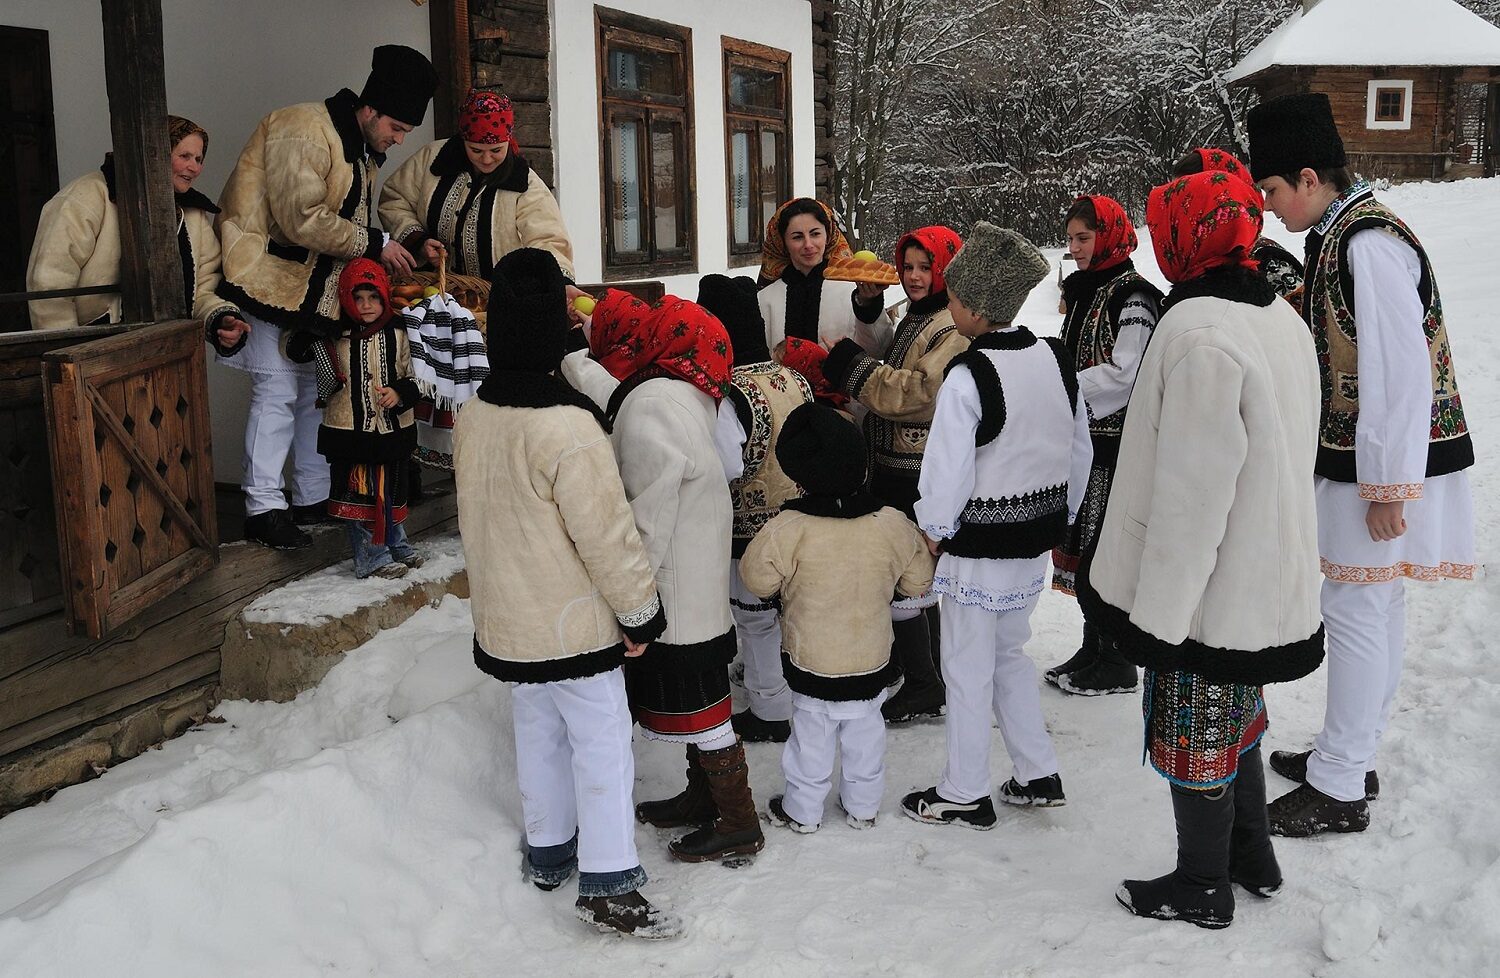 grup de colindători, copii, in costume traditional romanesti, care primesc covrigi de la gazedele adulte, imbracatae tot in costume nationale. Craciun în Bucovina. Crăciun autentic românesc 